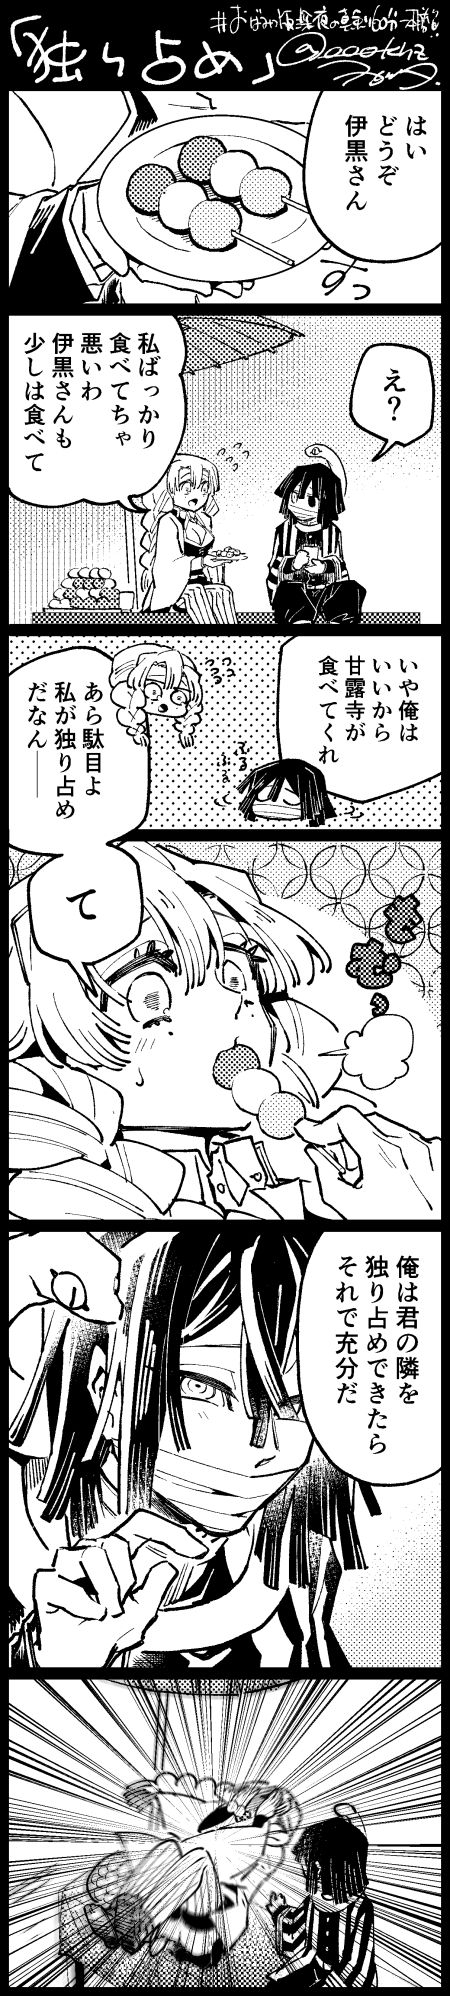 [Wogata] ObaMitsu Manga + E Rogu Sono 2 0